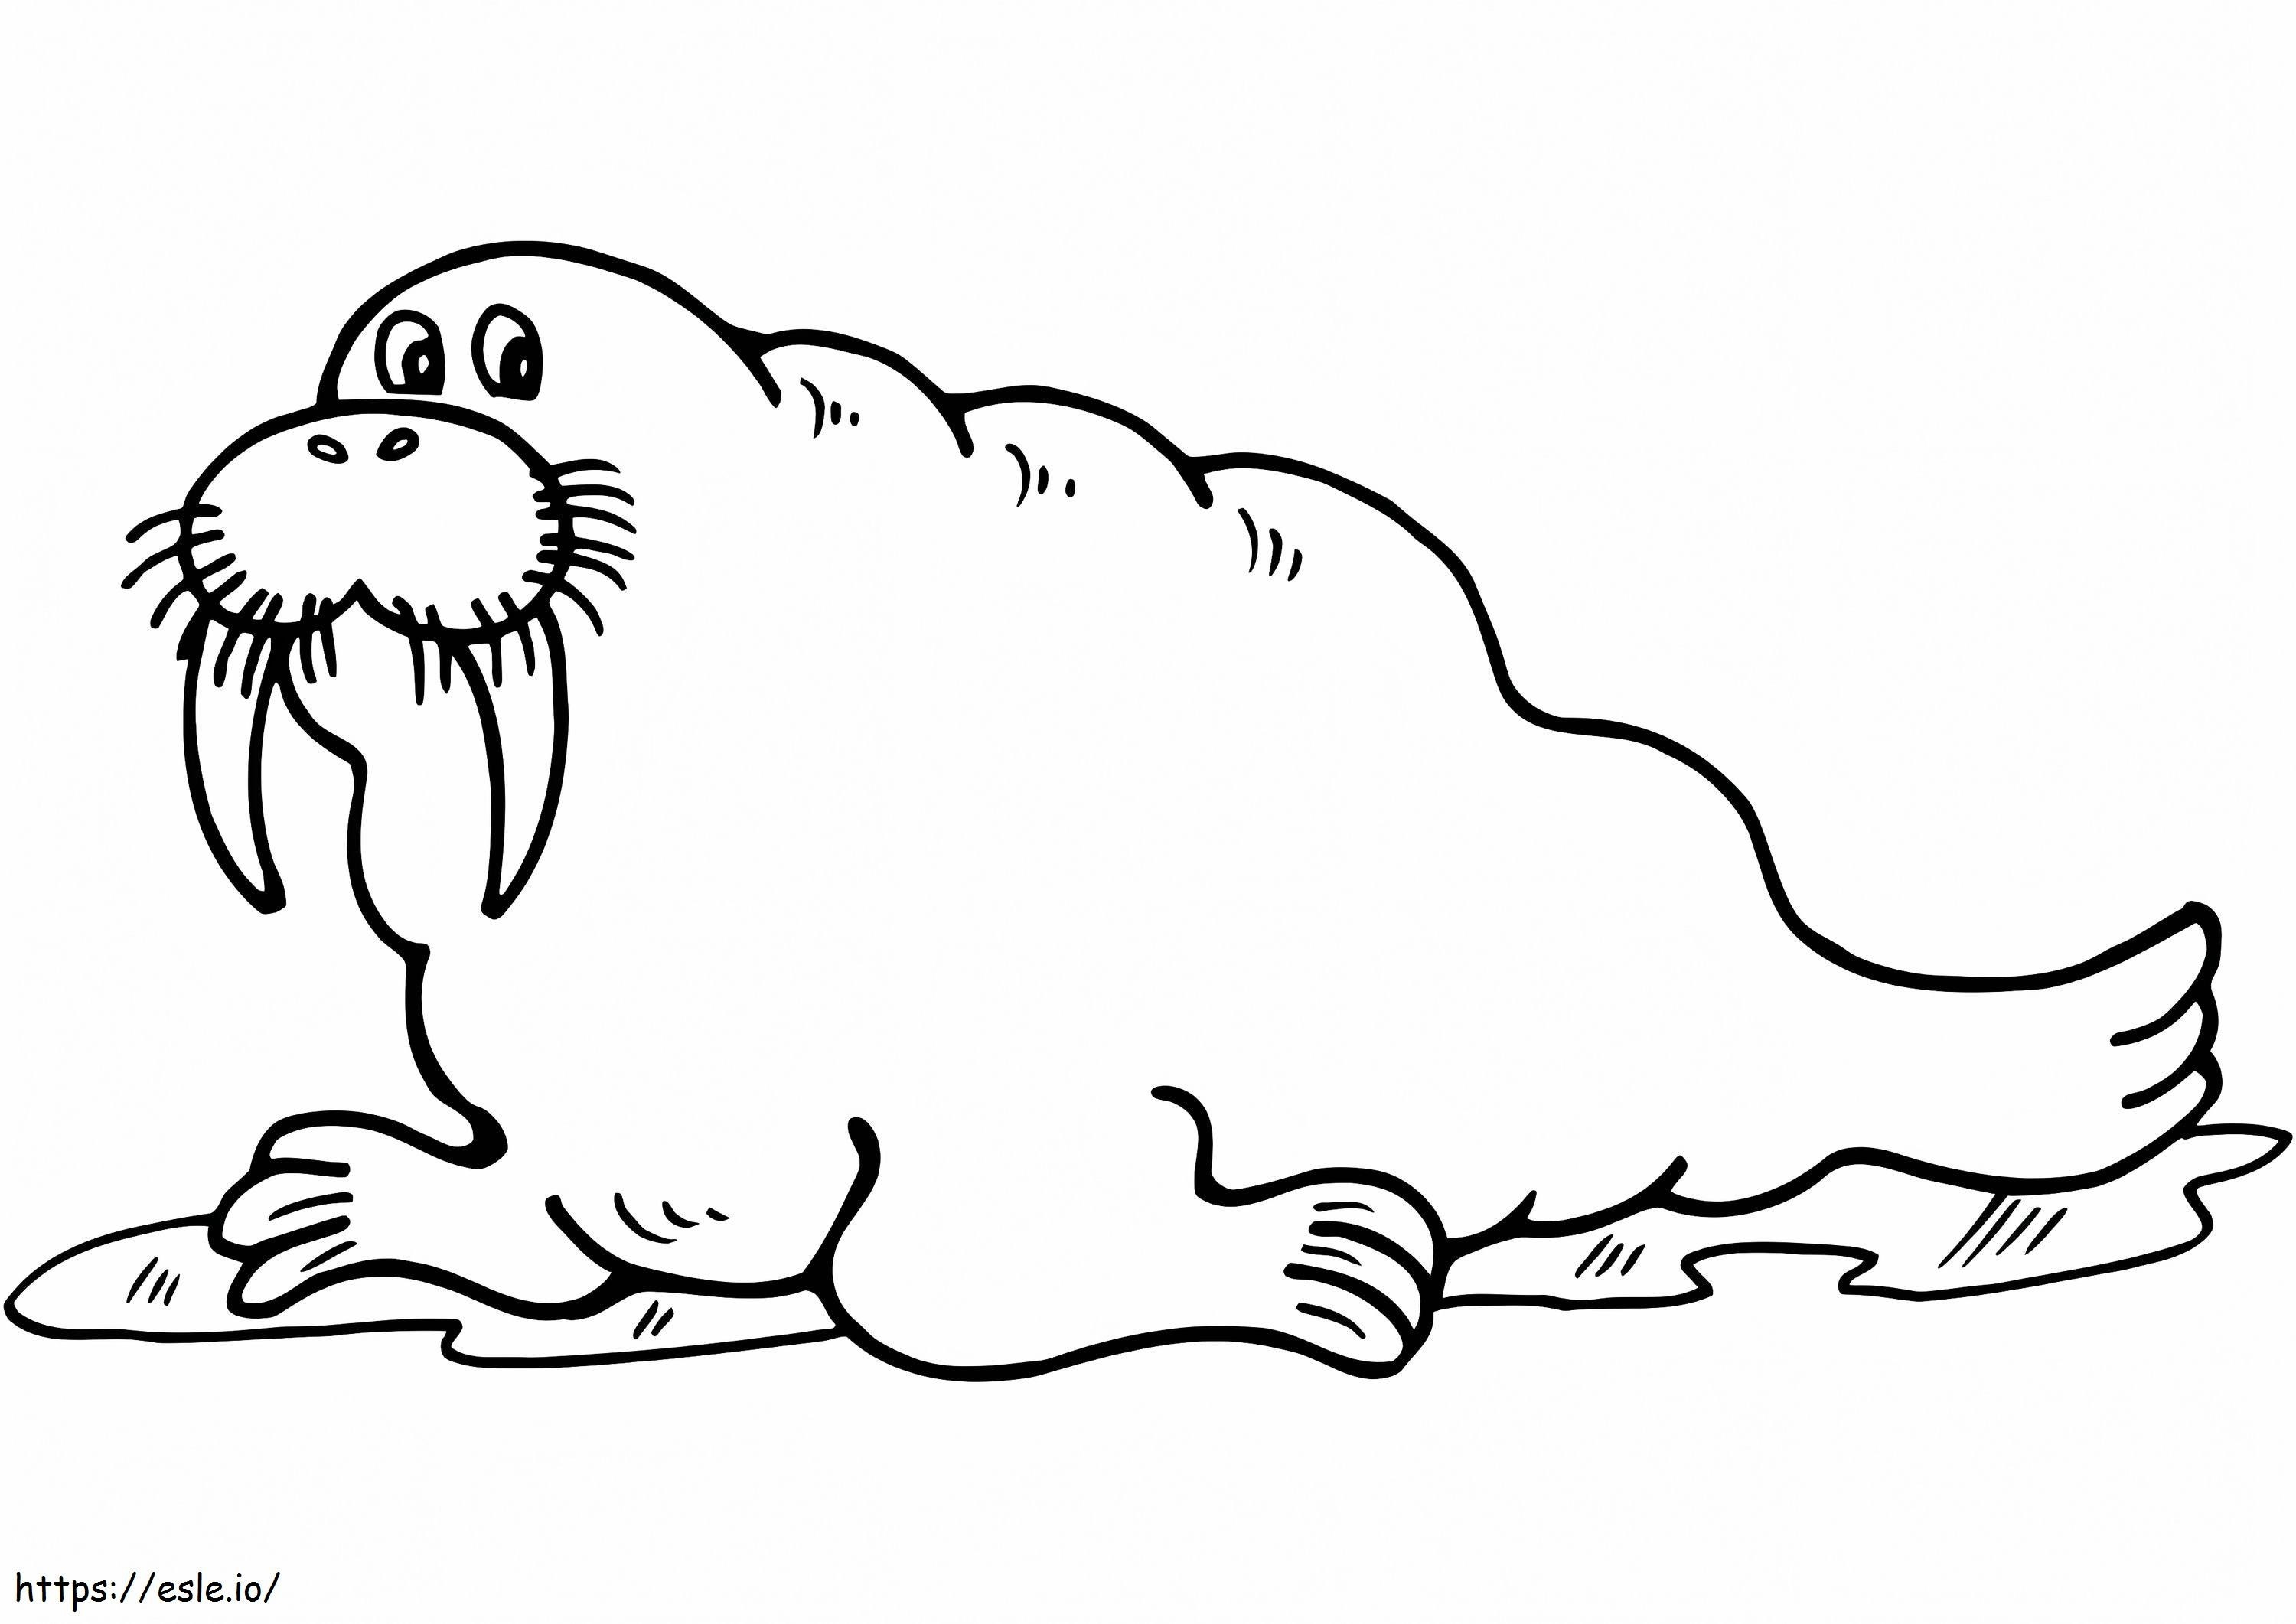 Cartoon Walrus coloring page